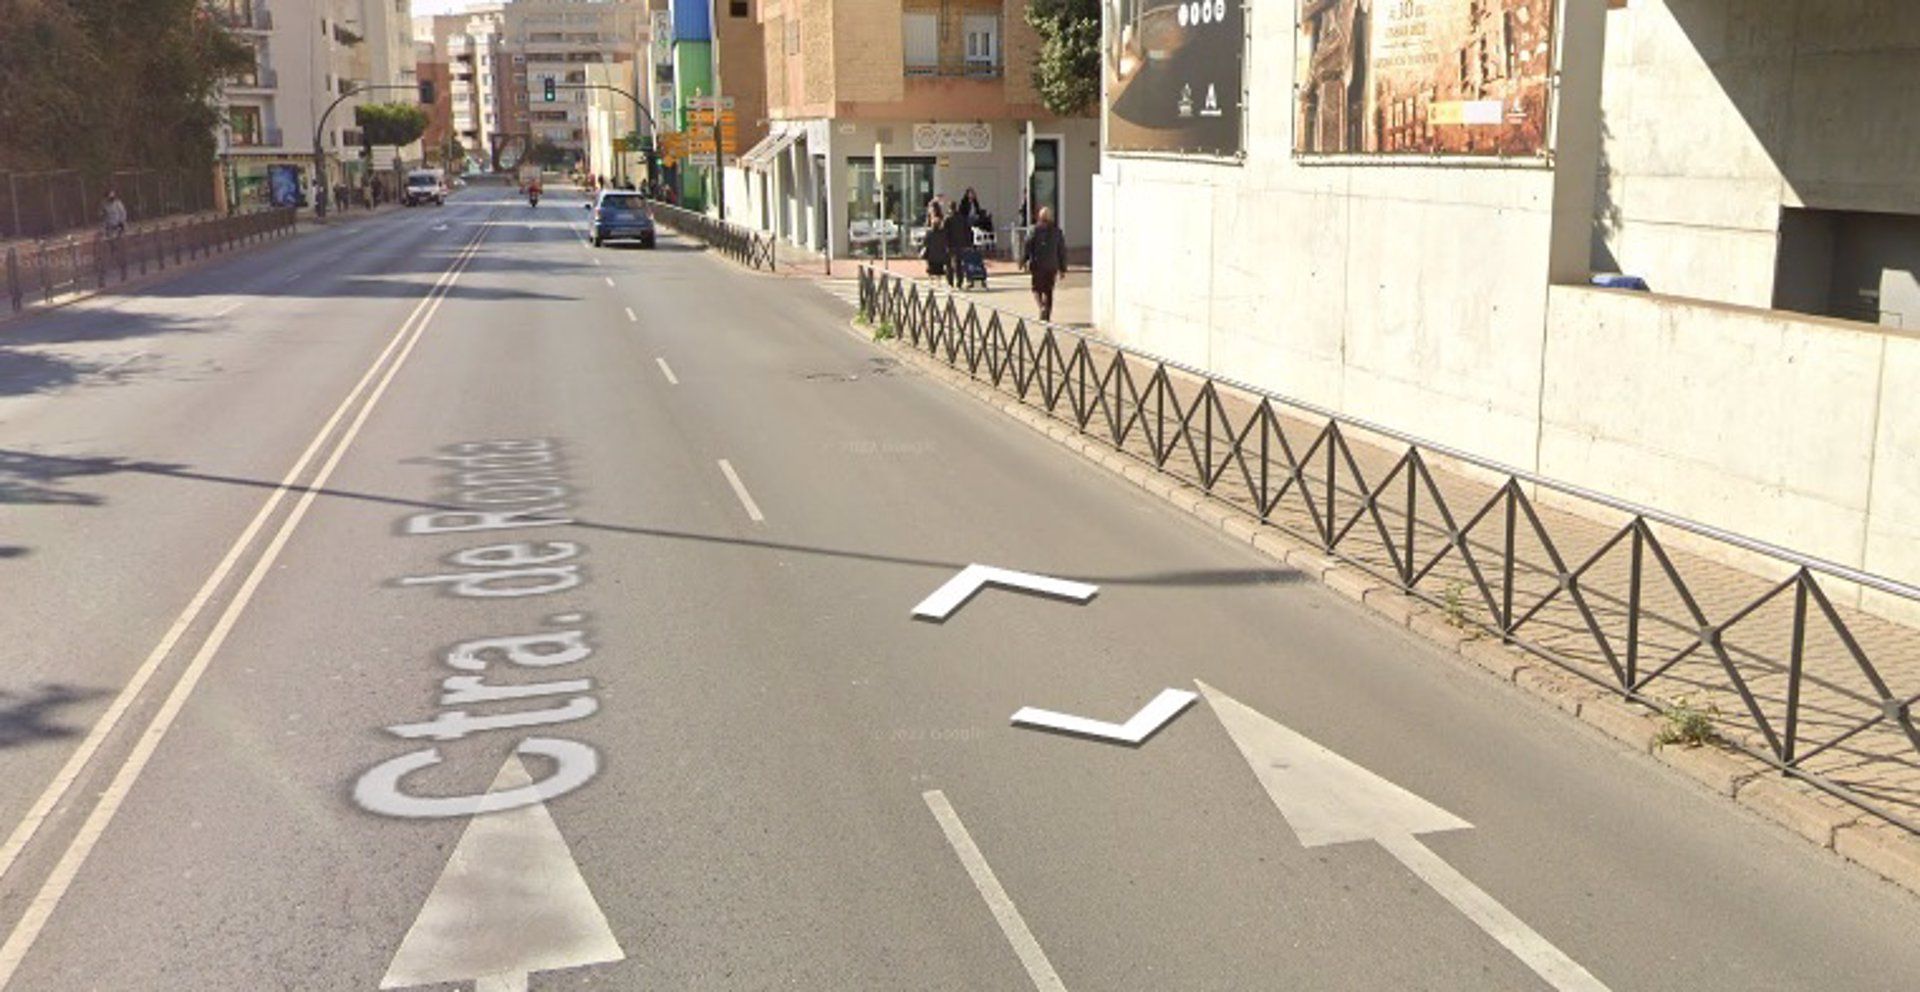 Calle donde ha ocurrido el accidente de tráfico en Almería.